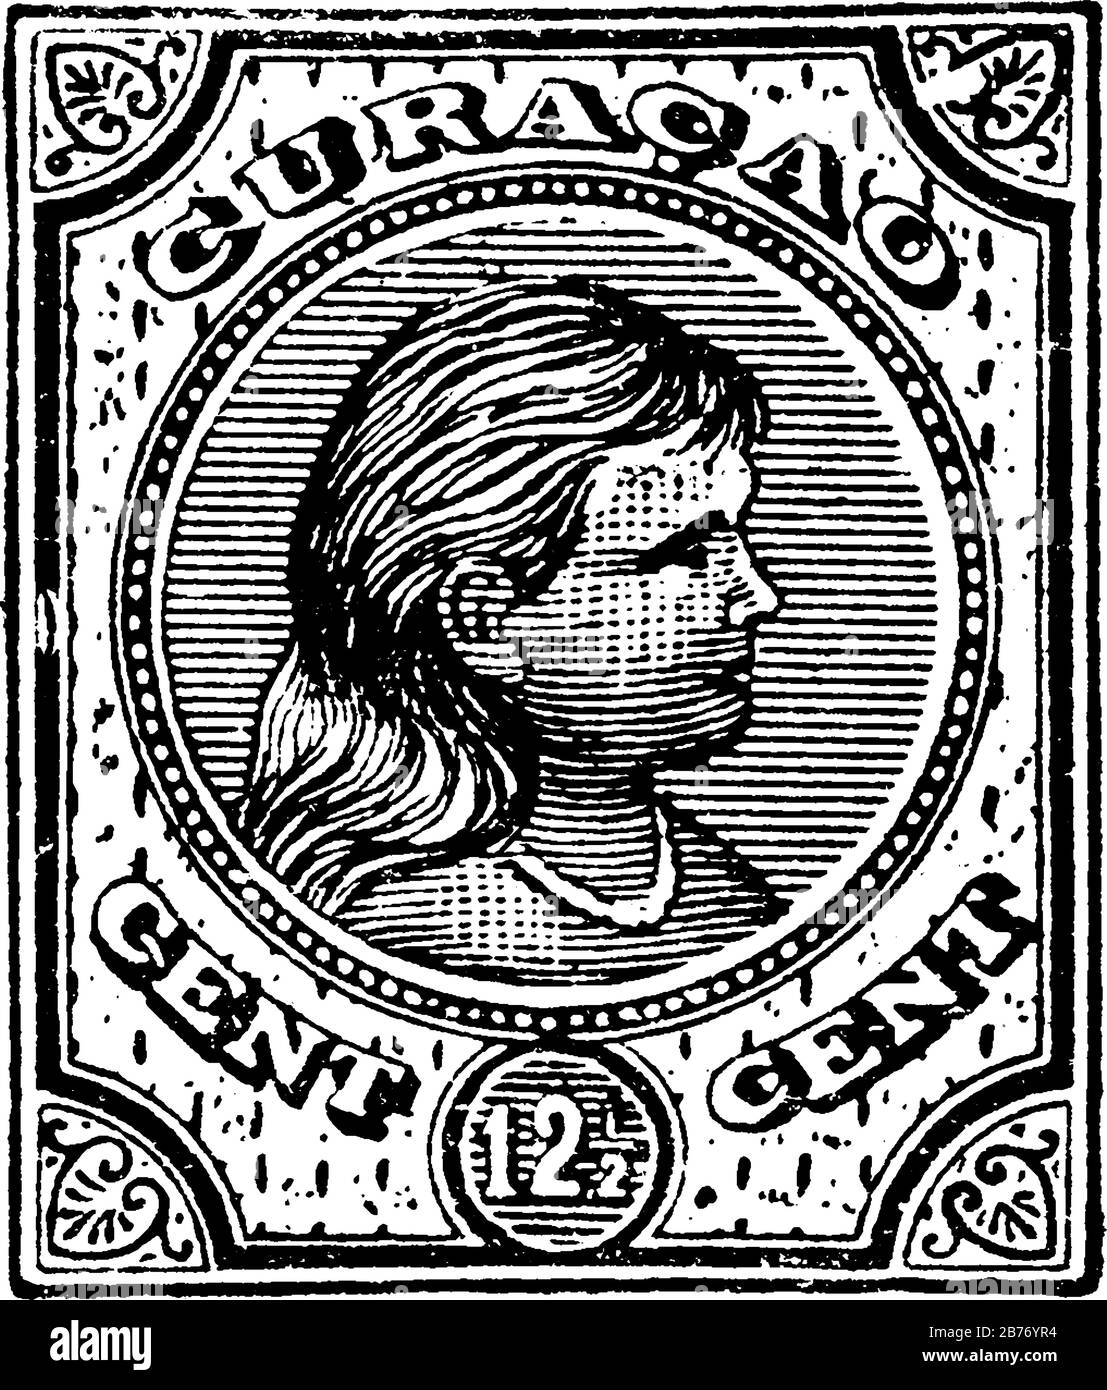 Stamp Curaçao (12-1/2 cent) de 1892-1893, un petit morceau de papier adhésif a été coincé à quelque chose pour montrer une quantité d'argent payé, drawi de ligne vintage Illustration de Vecteur